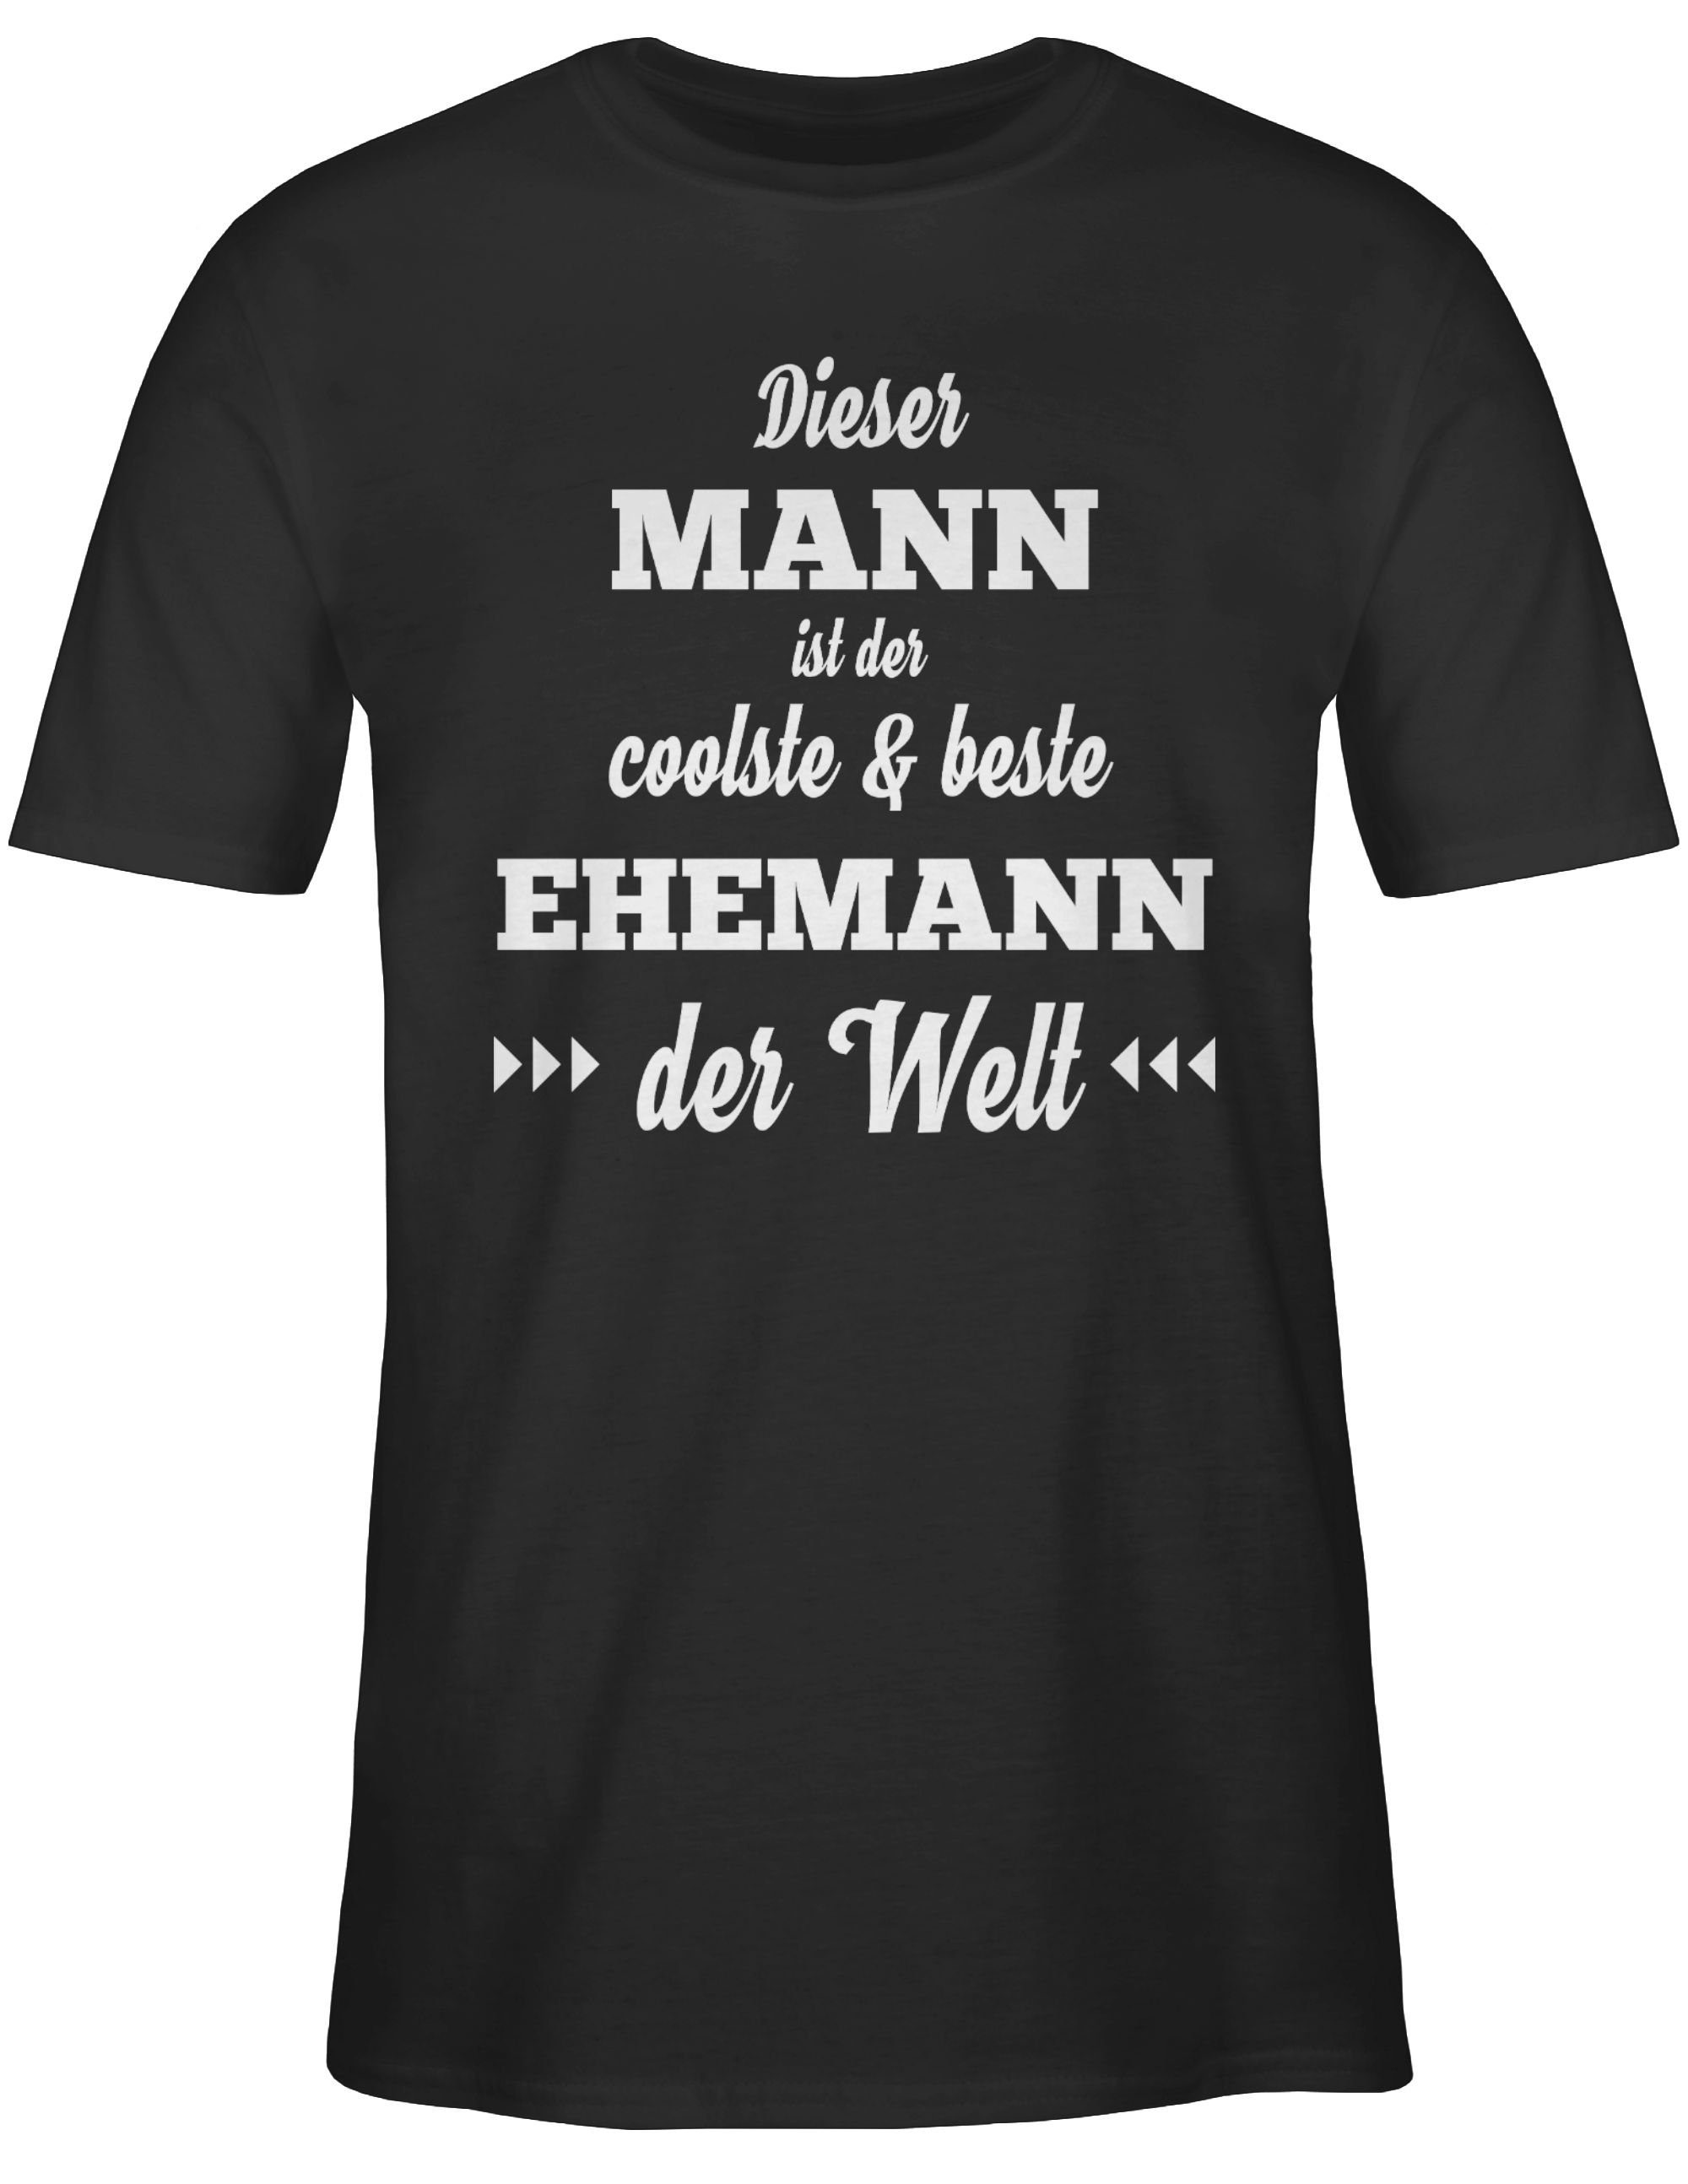 Mann beste Ehemann 1 Dieser und Männer & Geschenke der Herren coolste T-Shirt Shirtracer Schwarz ist